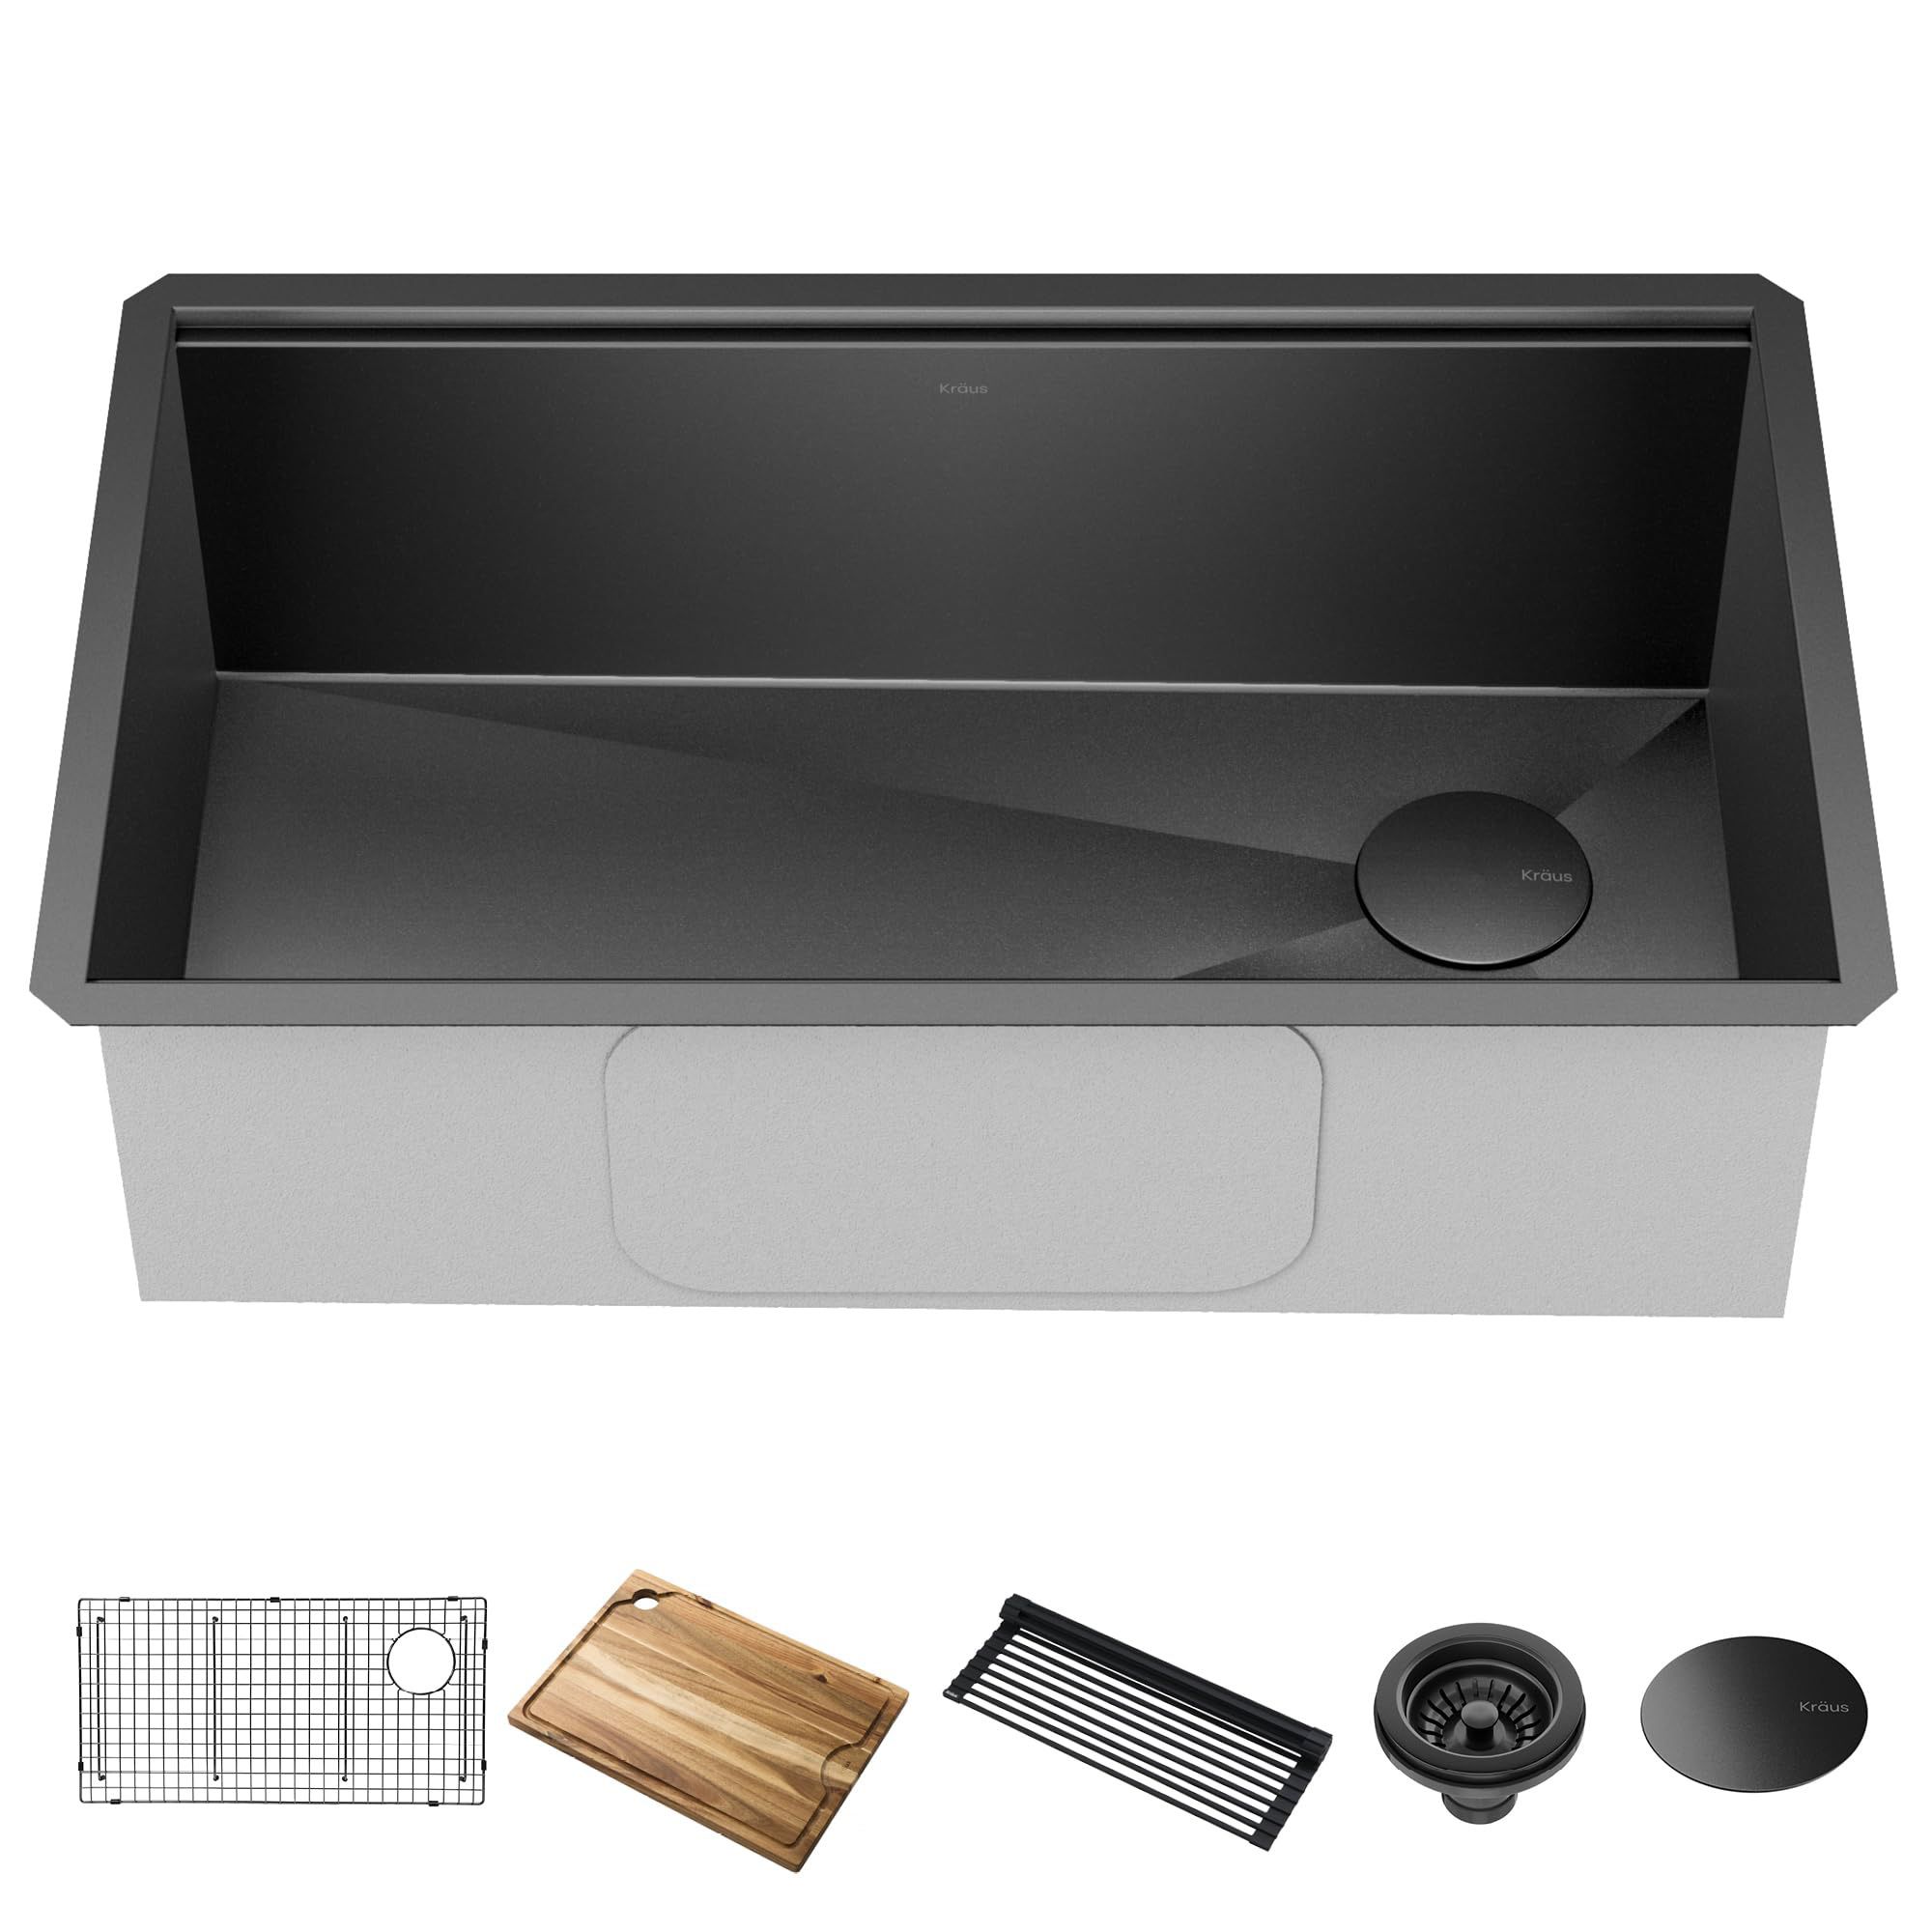 NIB KRAUS Kore Workstation 32-inch Undermount 16 Gauge Stainless Steel Single Bowl Kitchen Sink 